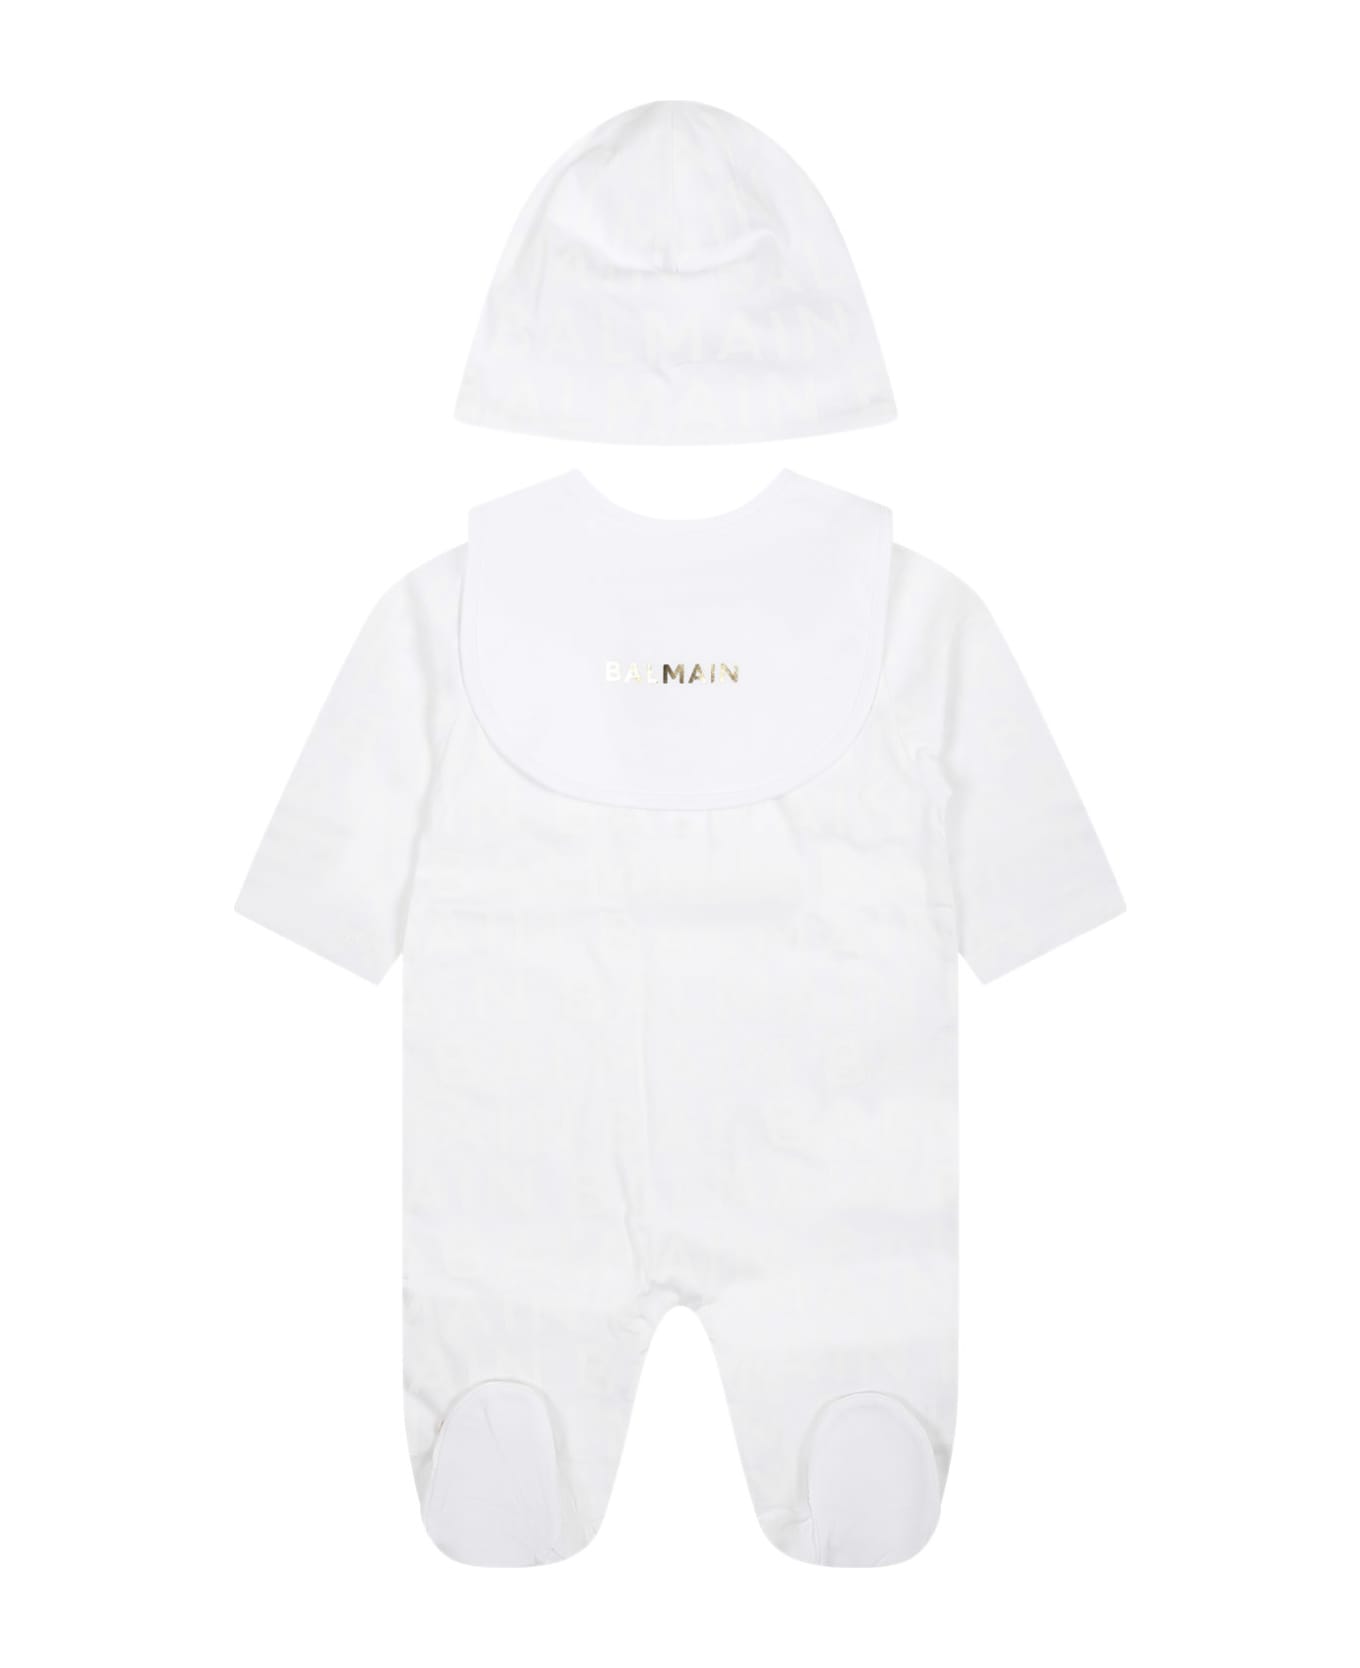 Balmain KIDS White Set For Baby Girl With Logo - White